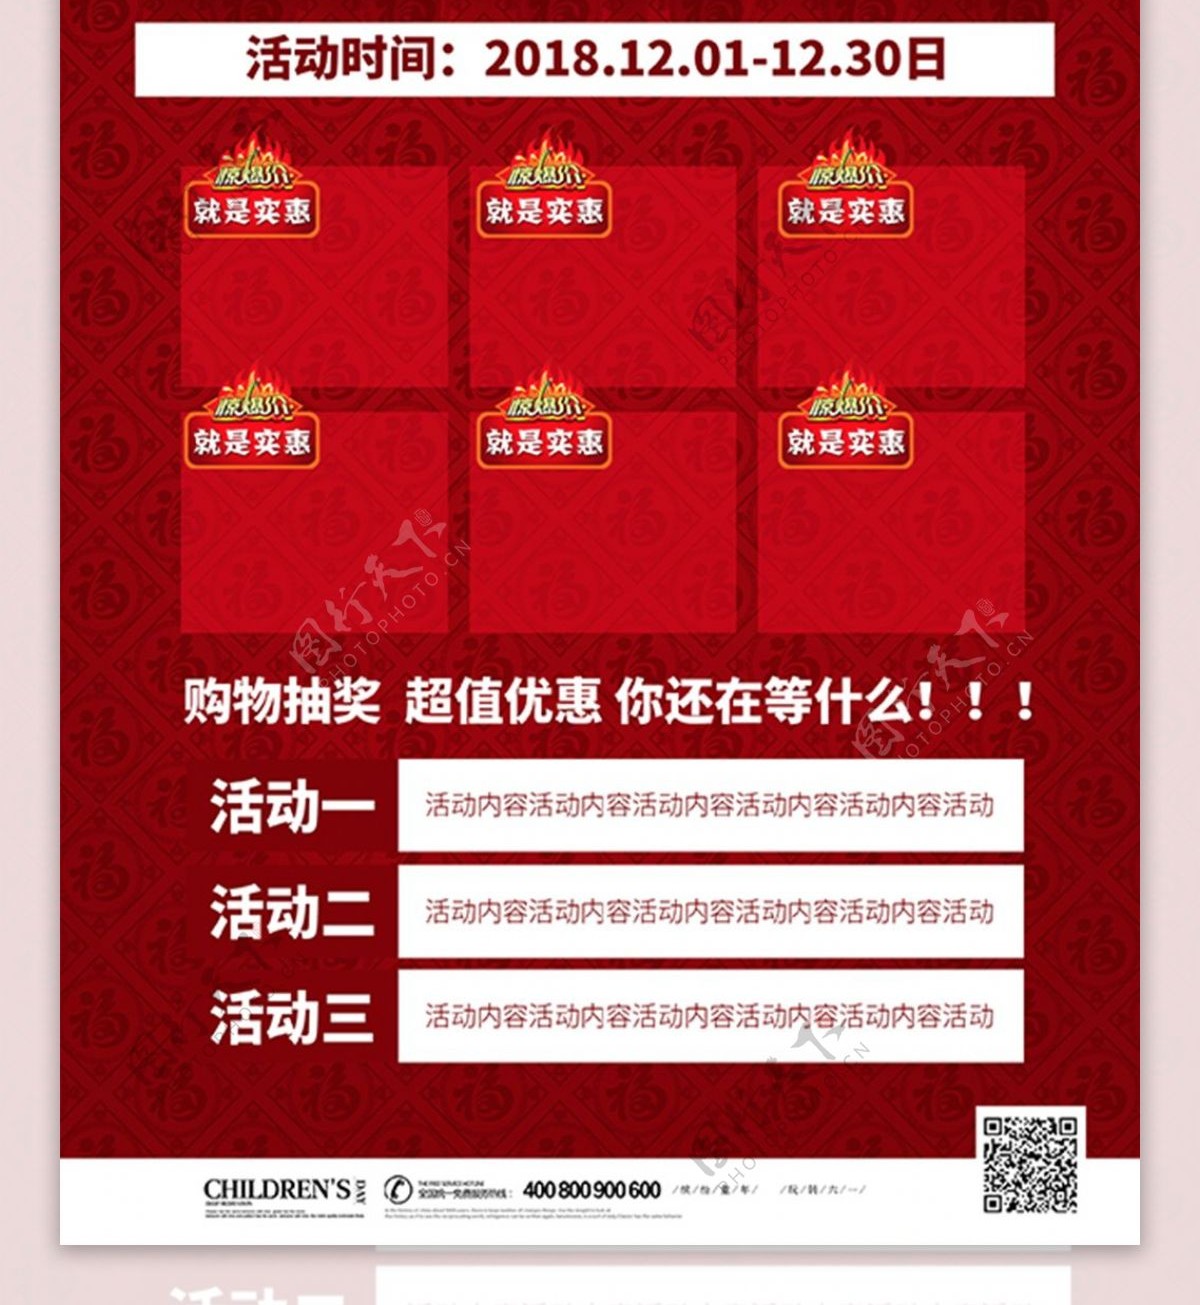 中国风新年红包猪年背景素材